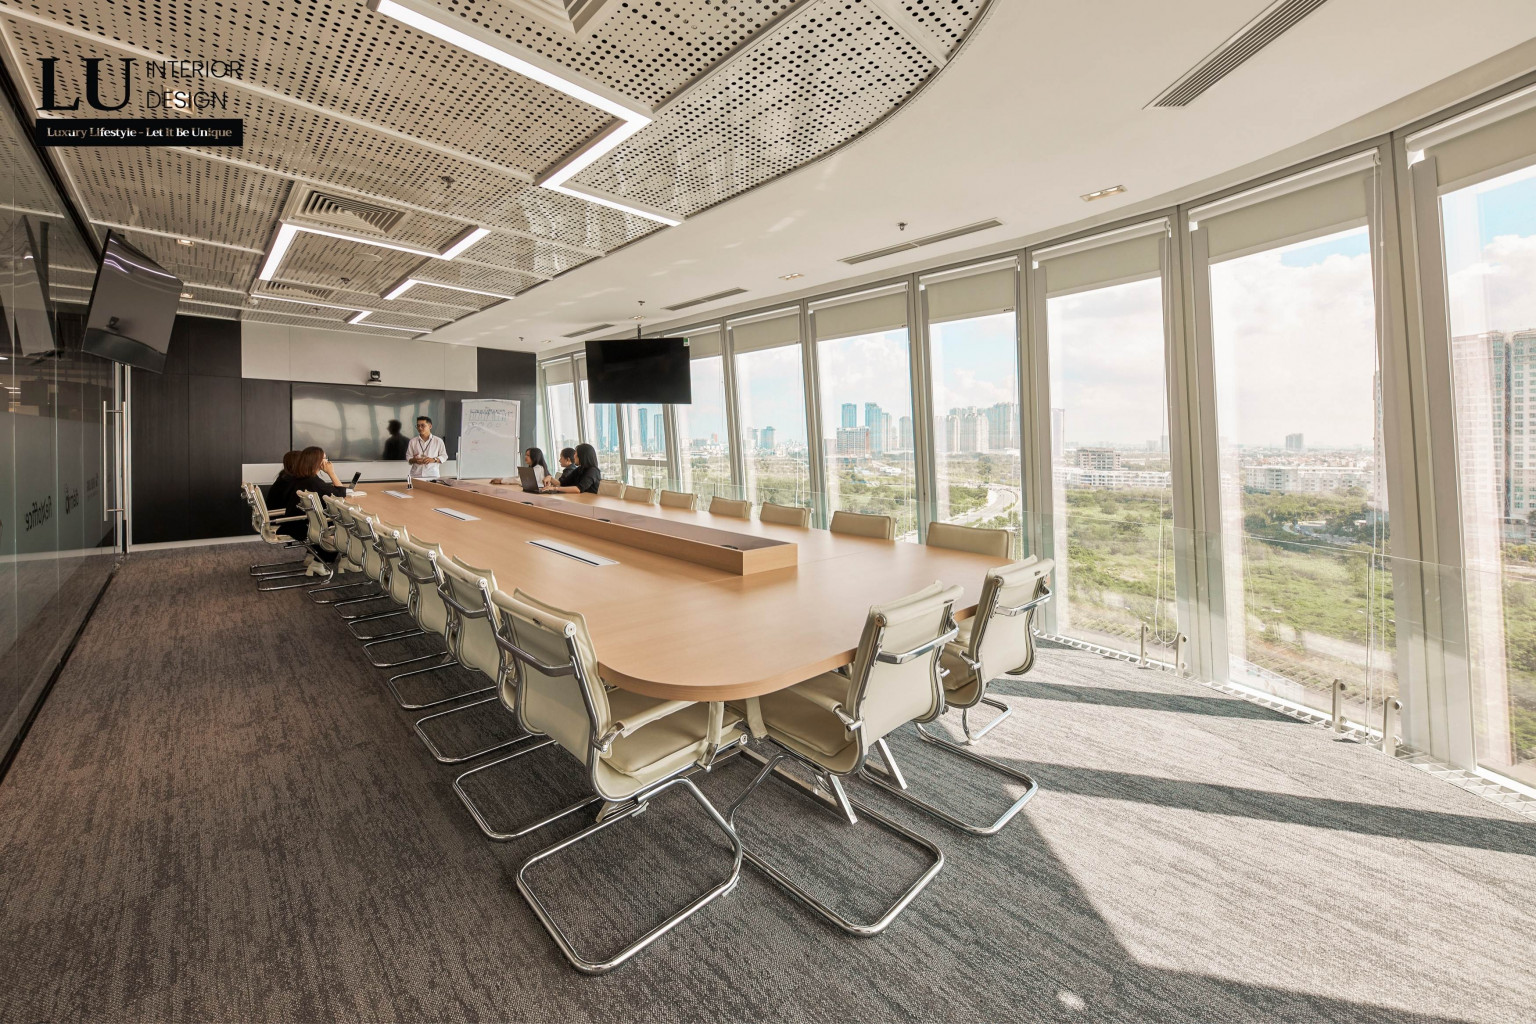 Khu vực phòng họp sử dụng nội thất hiện đại  | Dự án Thiên Long – Lu Design thực hiện. 